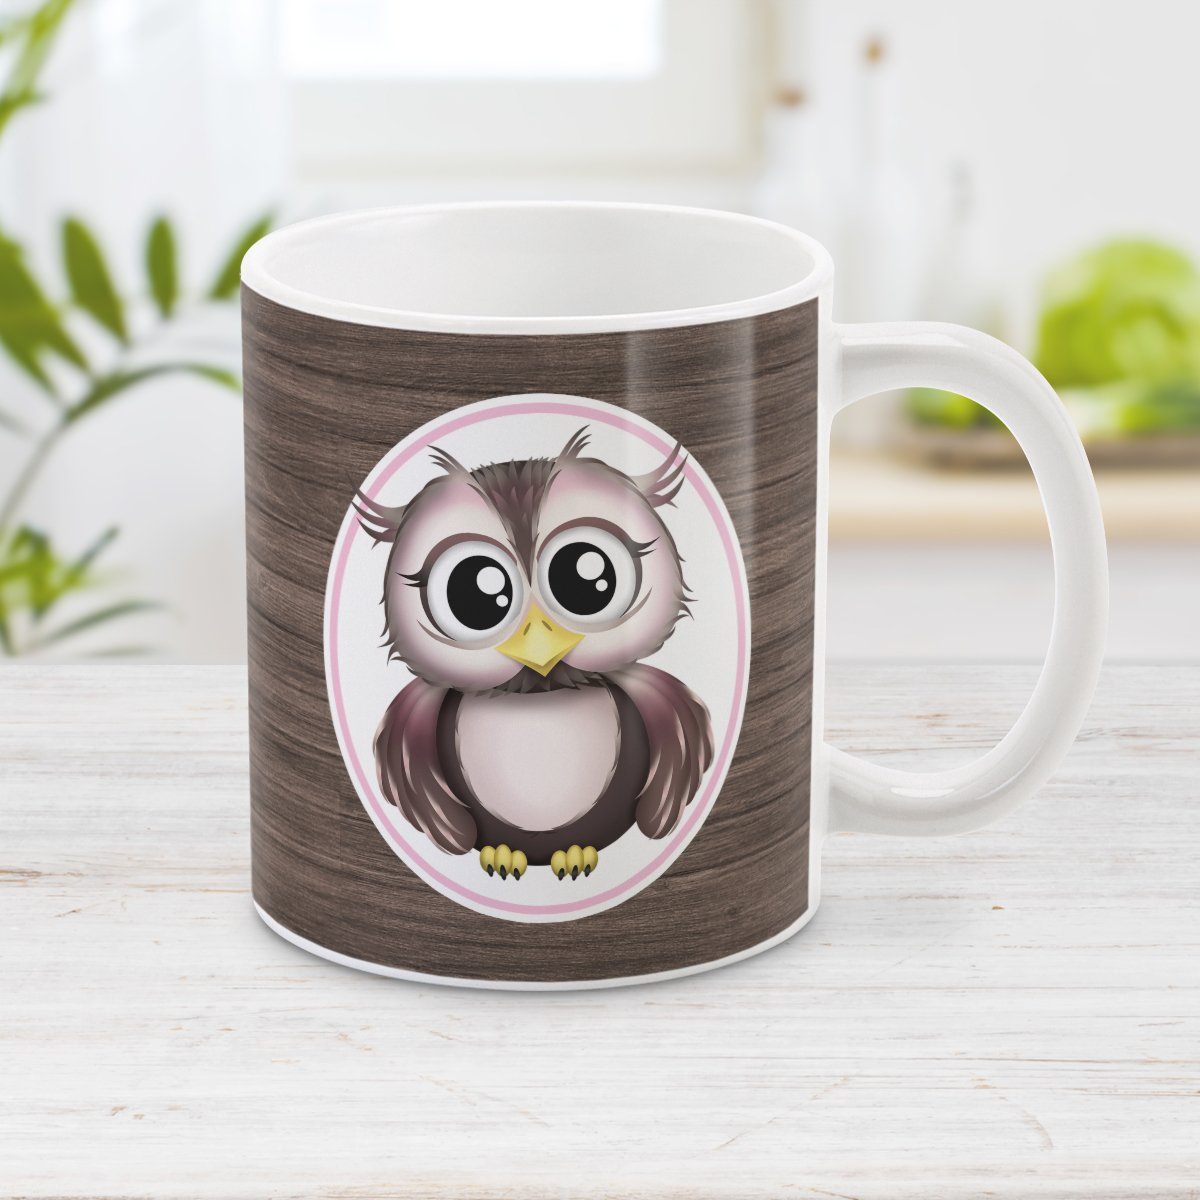 Rustic Wood Pink and Brown Owl Mug at Amy's Coffee Mugs